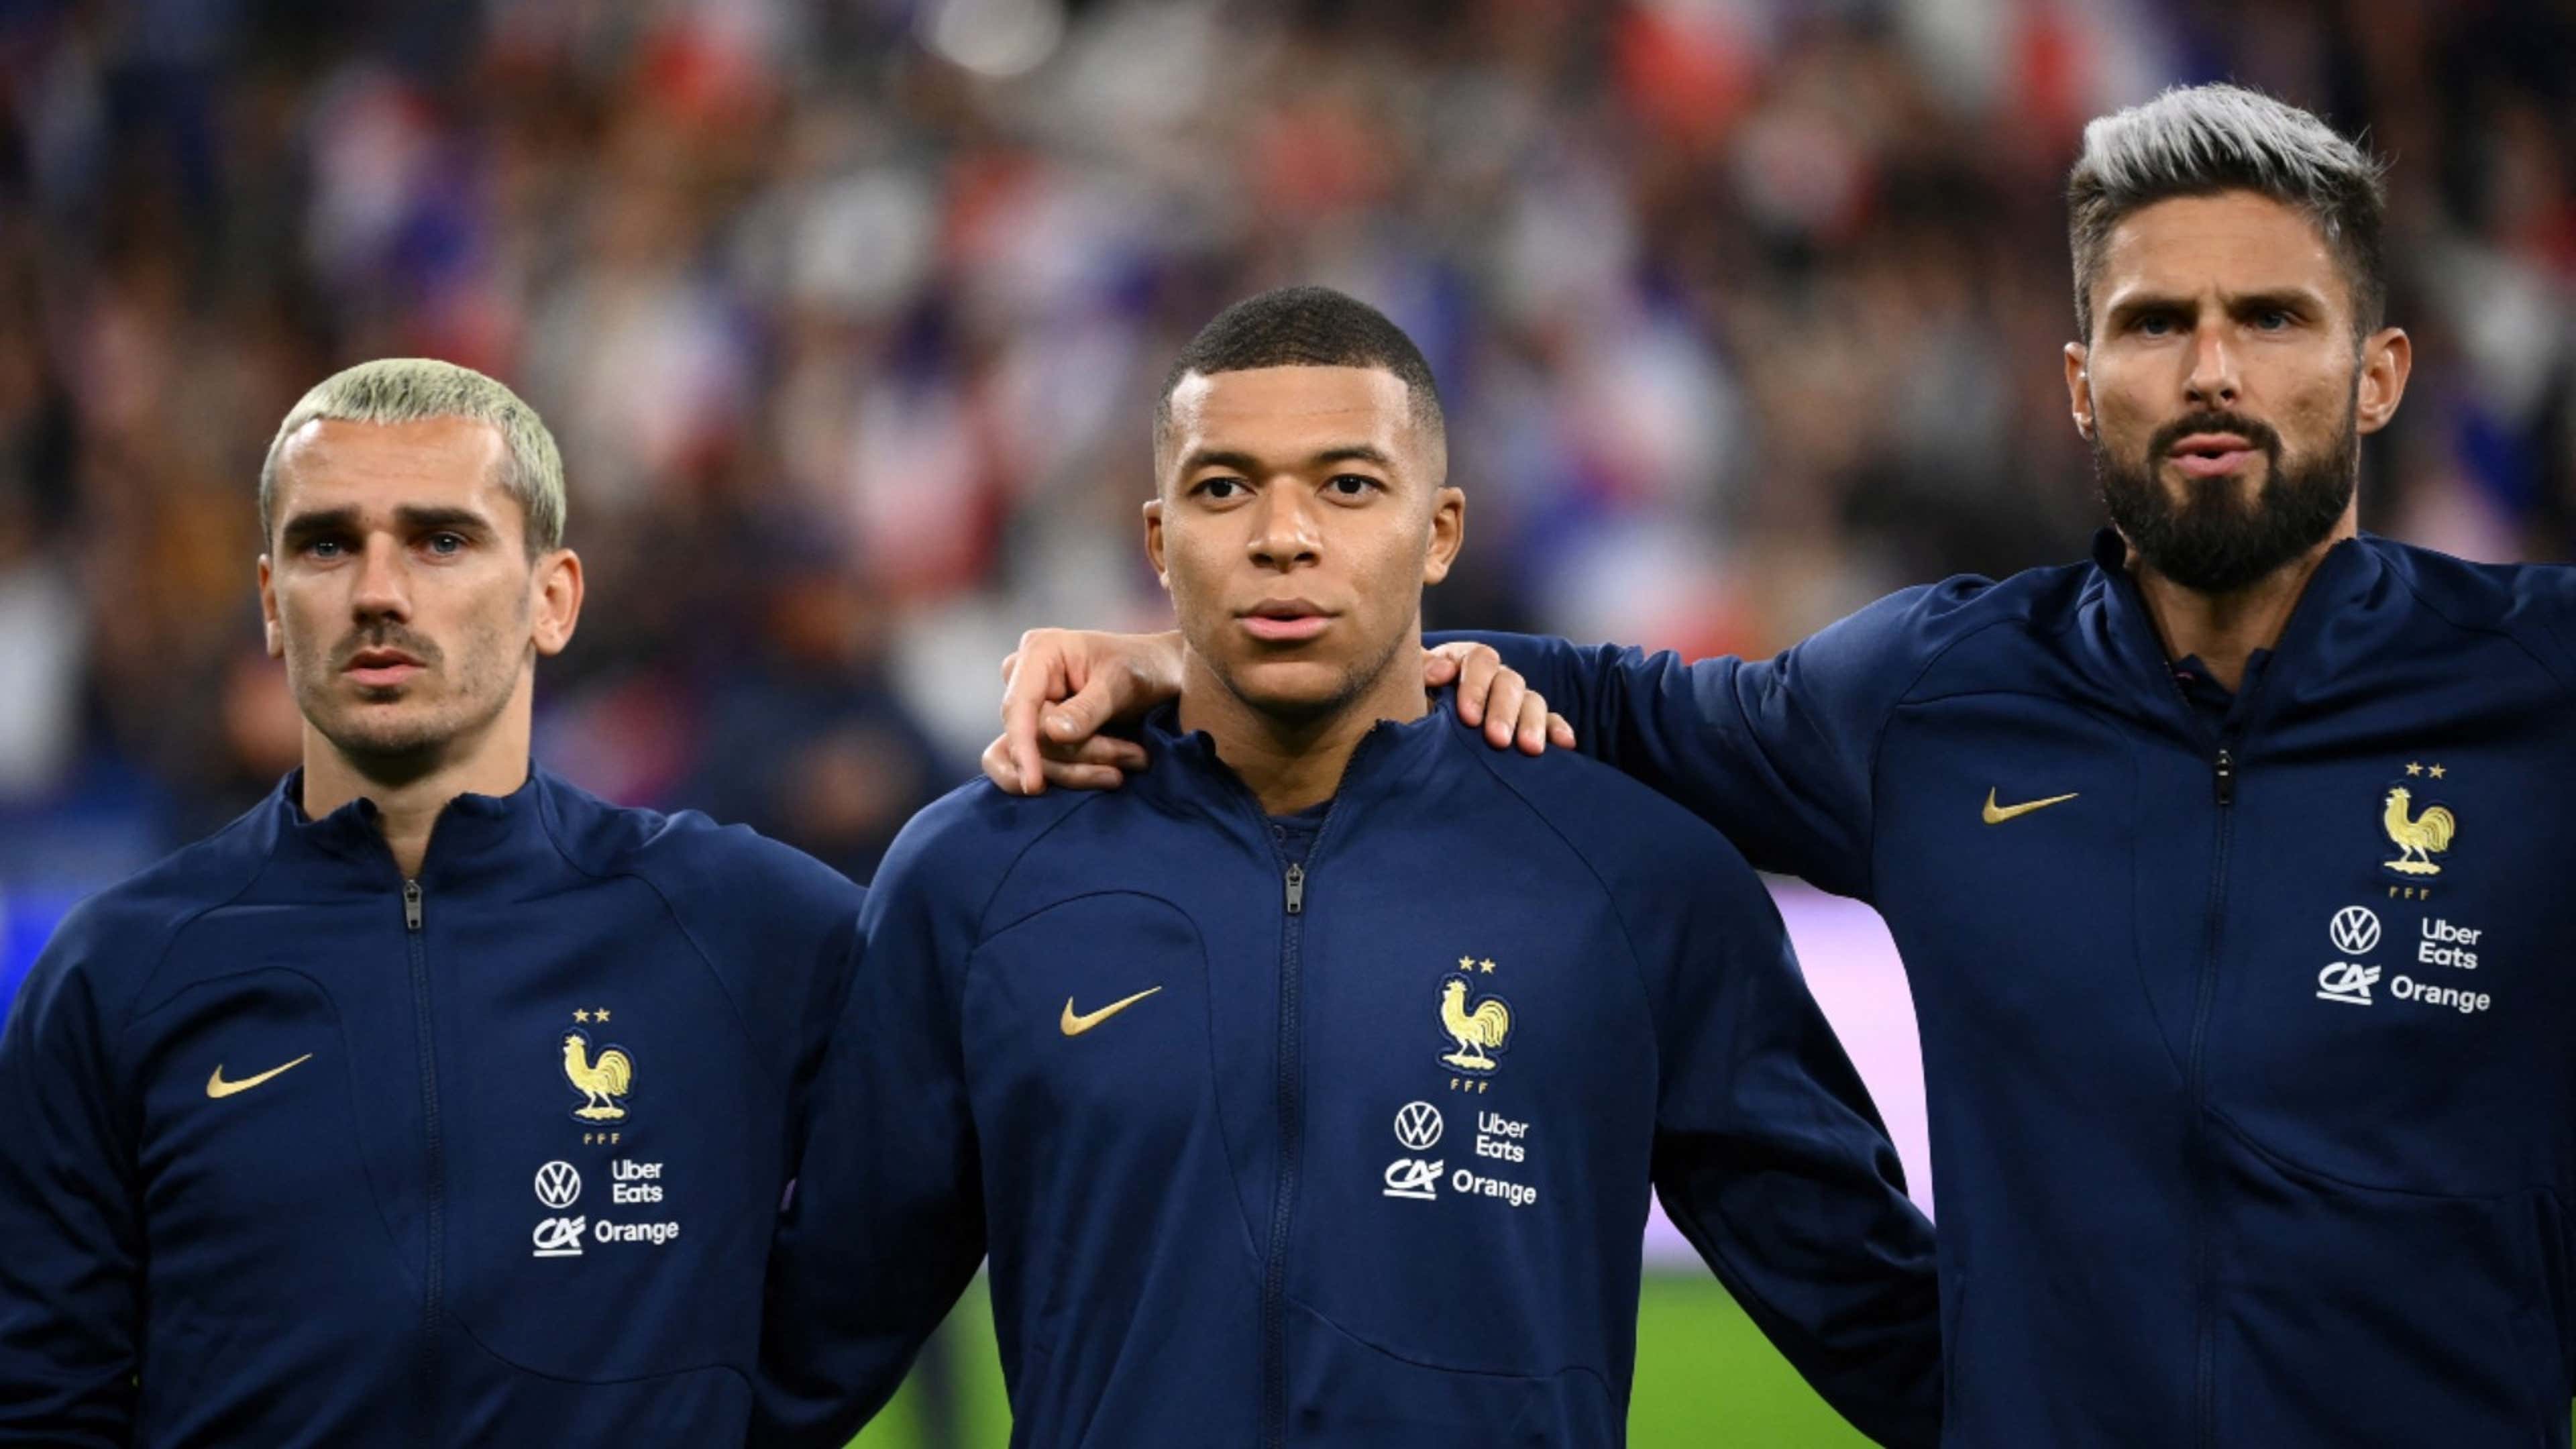 Campeã mundial e na Europa, seleção francesa de futebol é movida